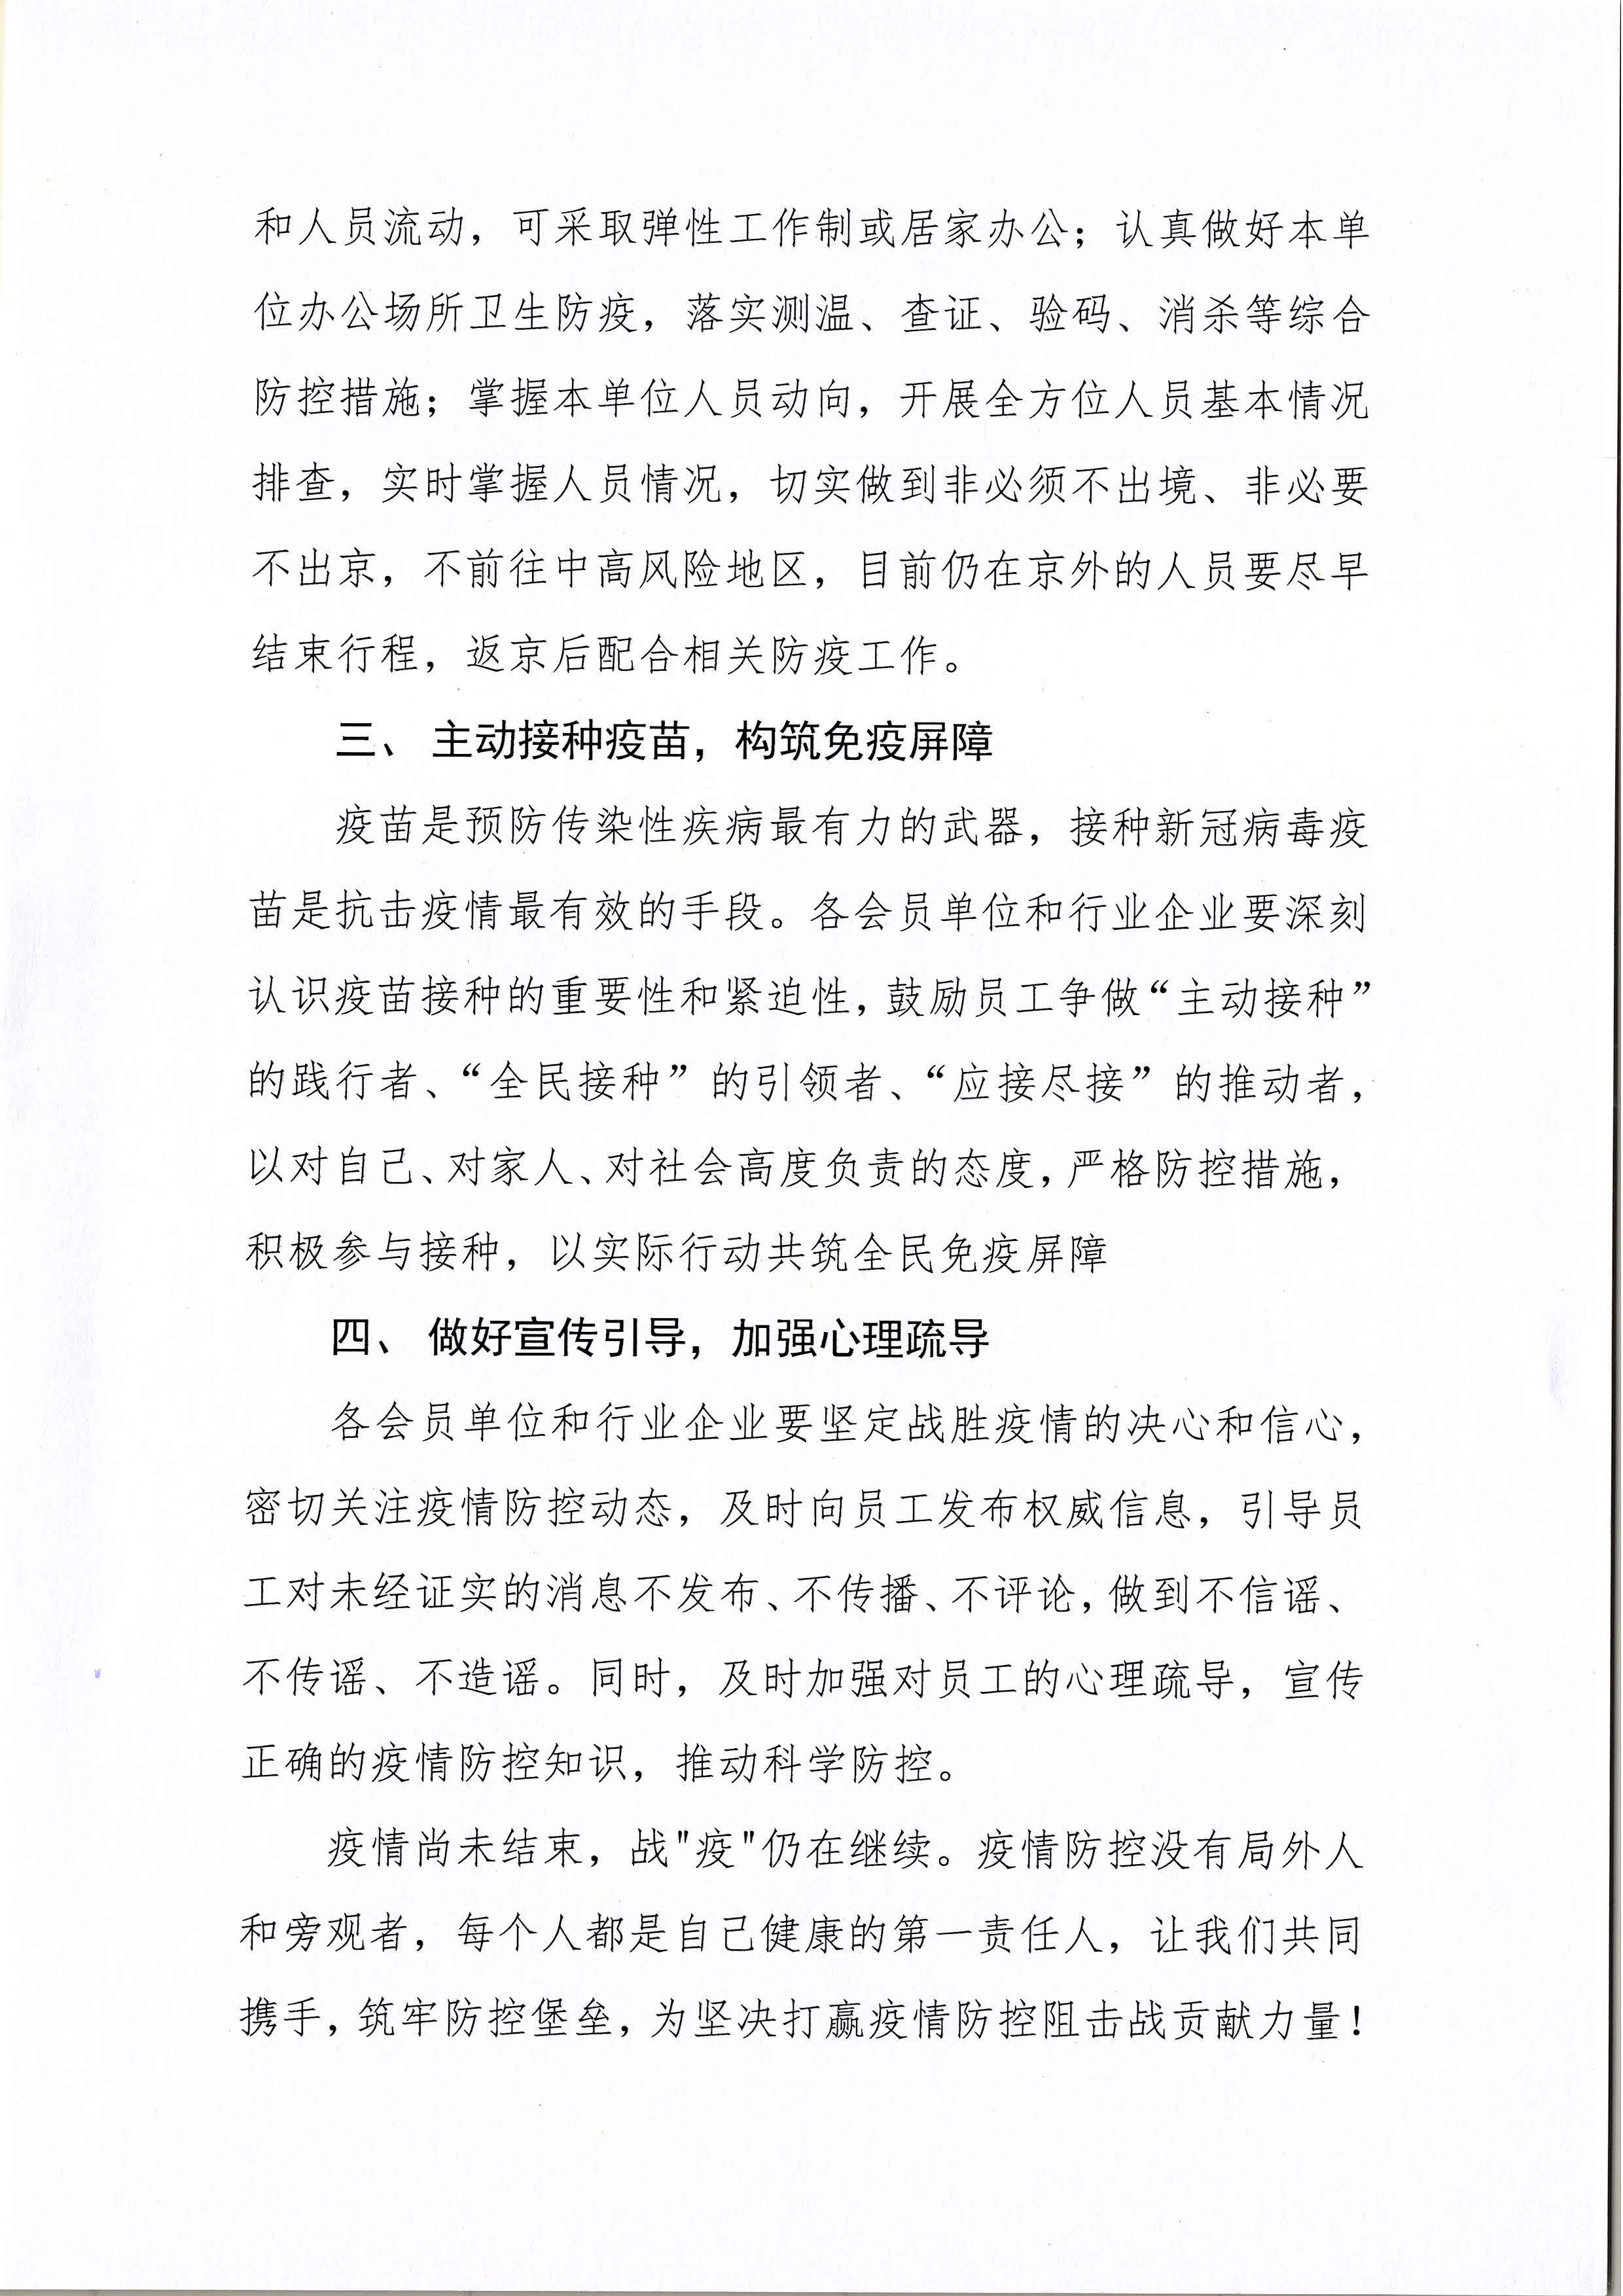 北京软件和信息服务业协会关于进一步加强疫情防控工作的倡议书_页面_2.jpg